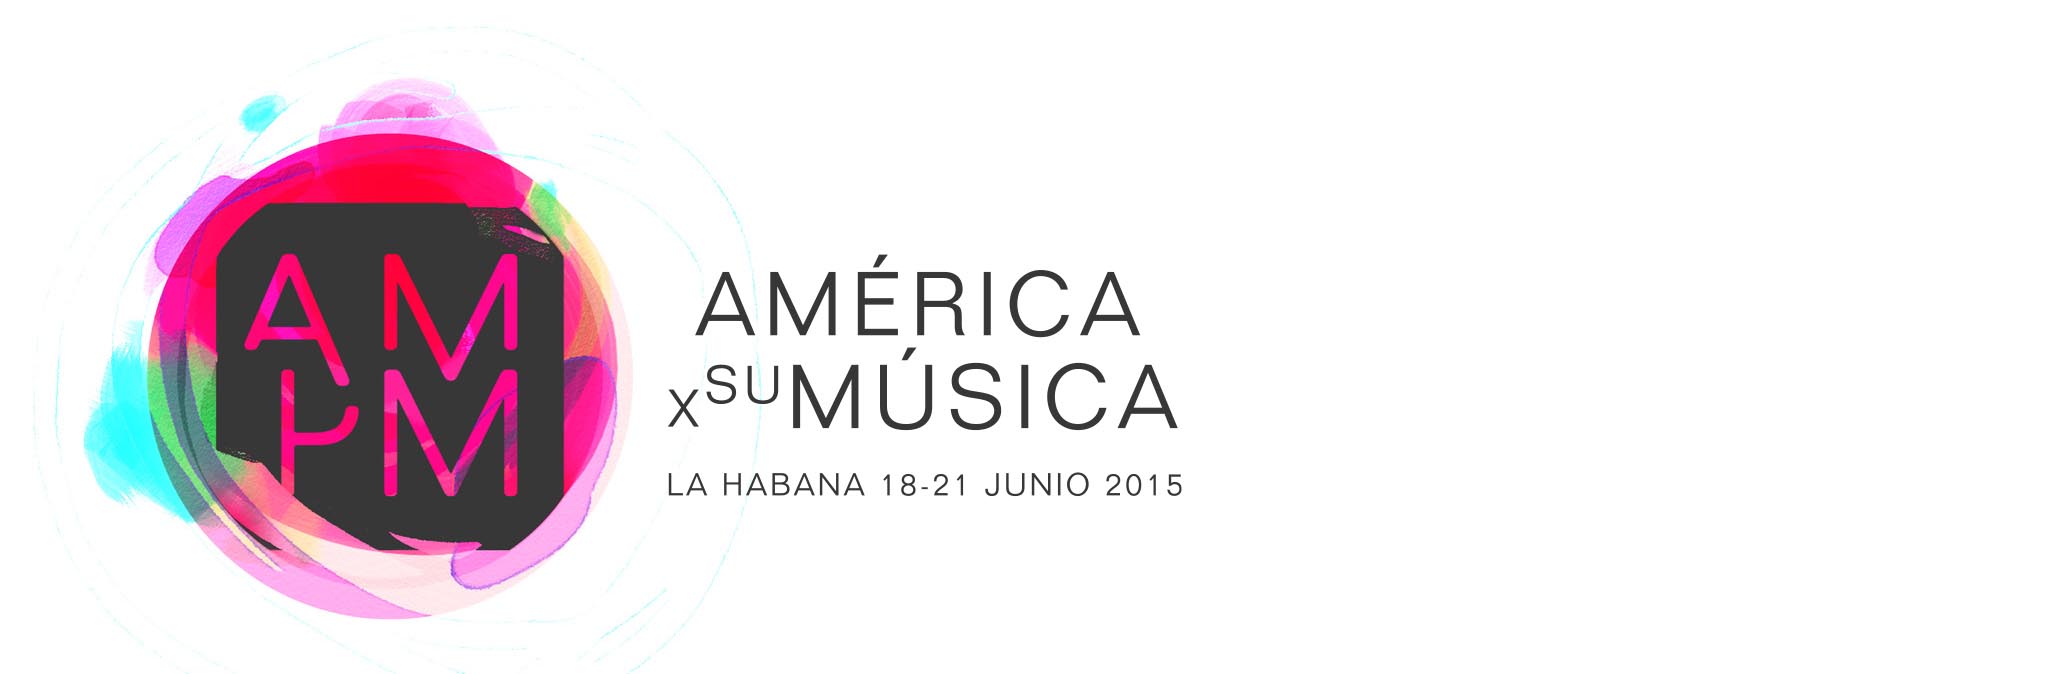 AM-PM “América Por su Música”